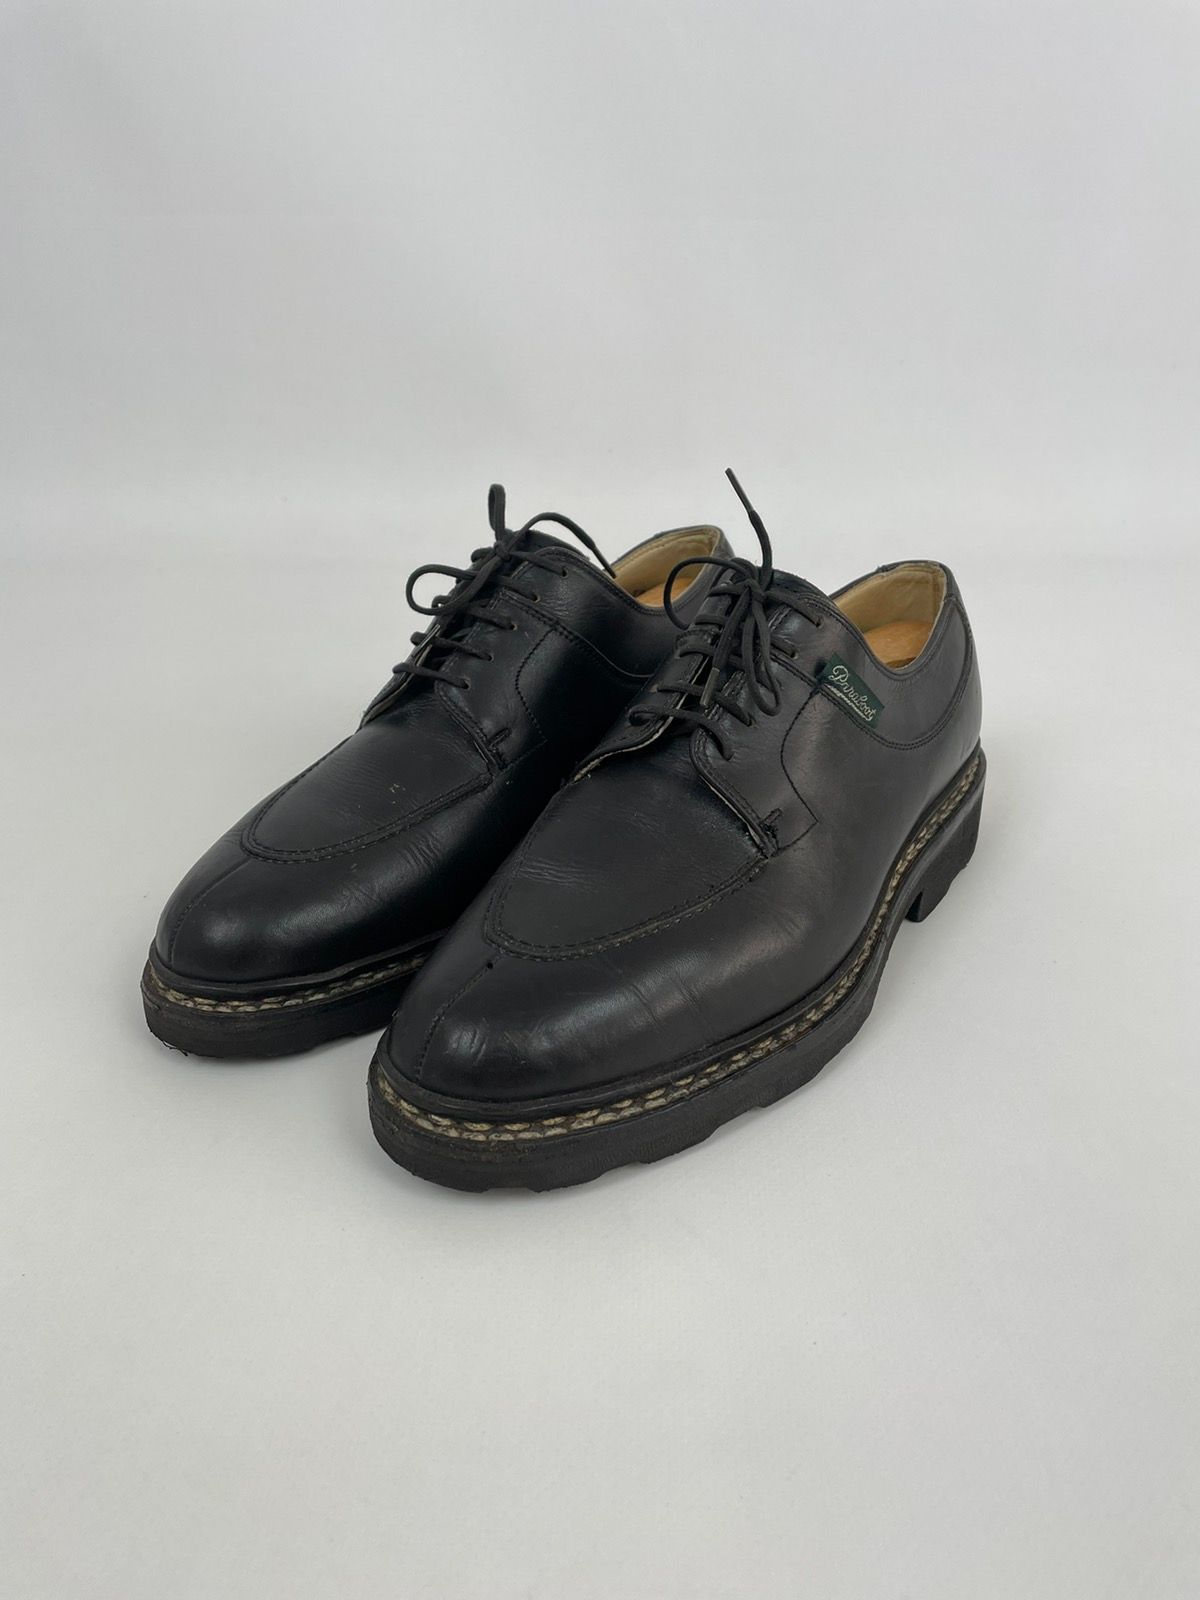 Vintage Paraboot Avignon Griff II Leather Split Toe Derby Shoes